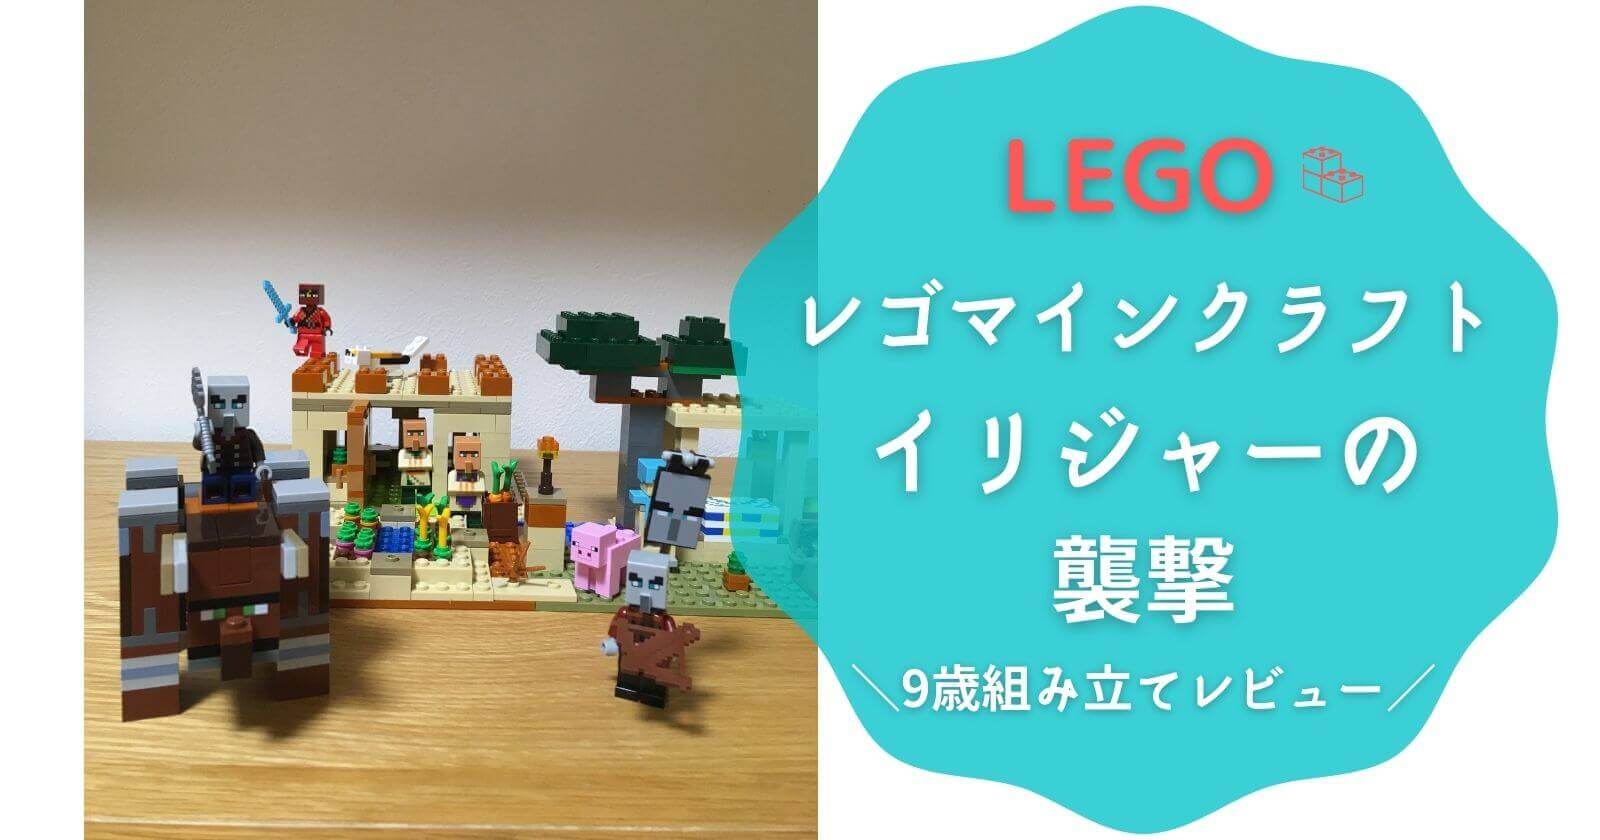 【レゴマインクラフト】イリジャーの襲撃／9歳組み立てレビュー（LEGO21160）ブログ紹介